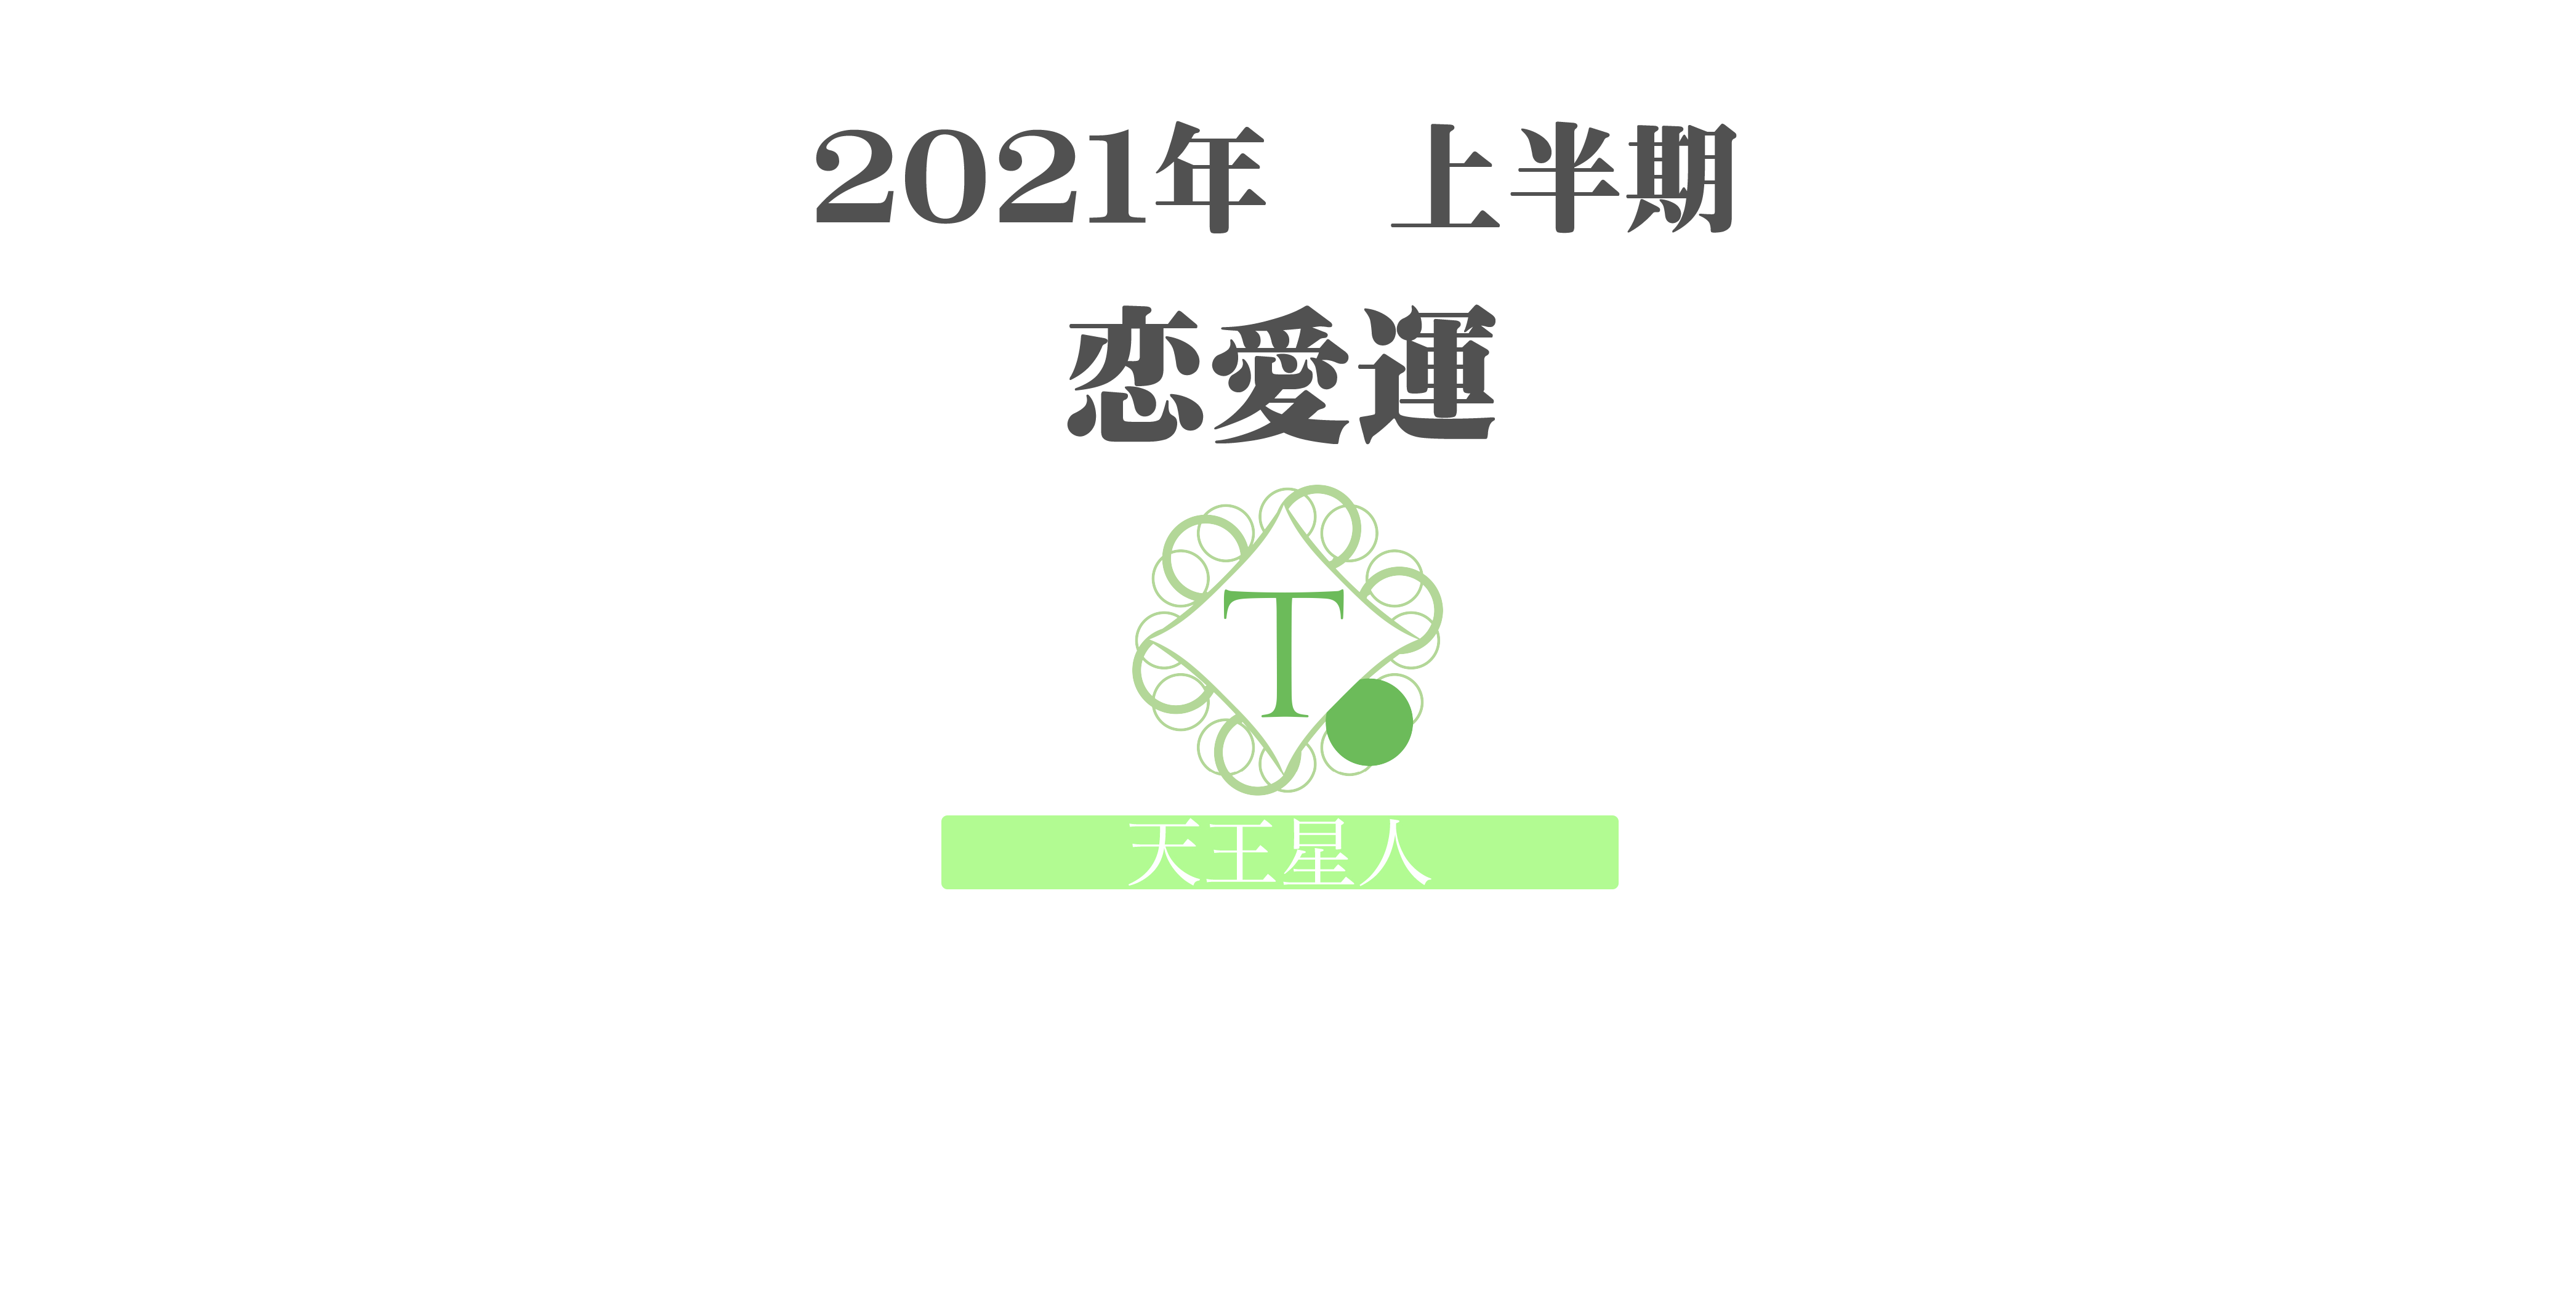 【天王星人】の2021年上半期恋愛運